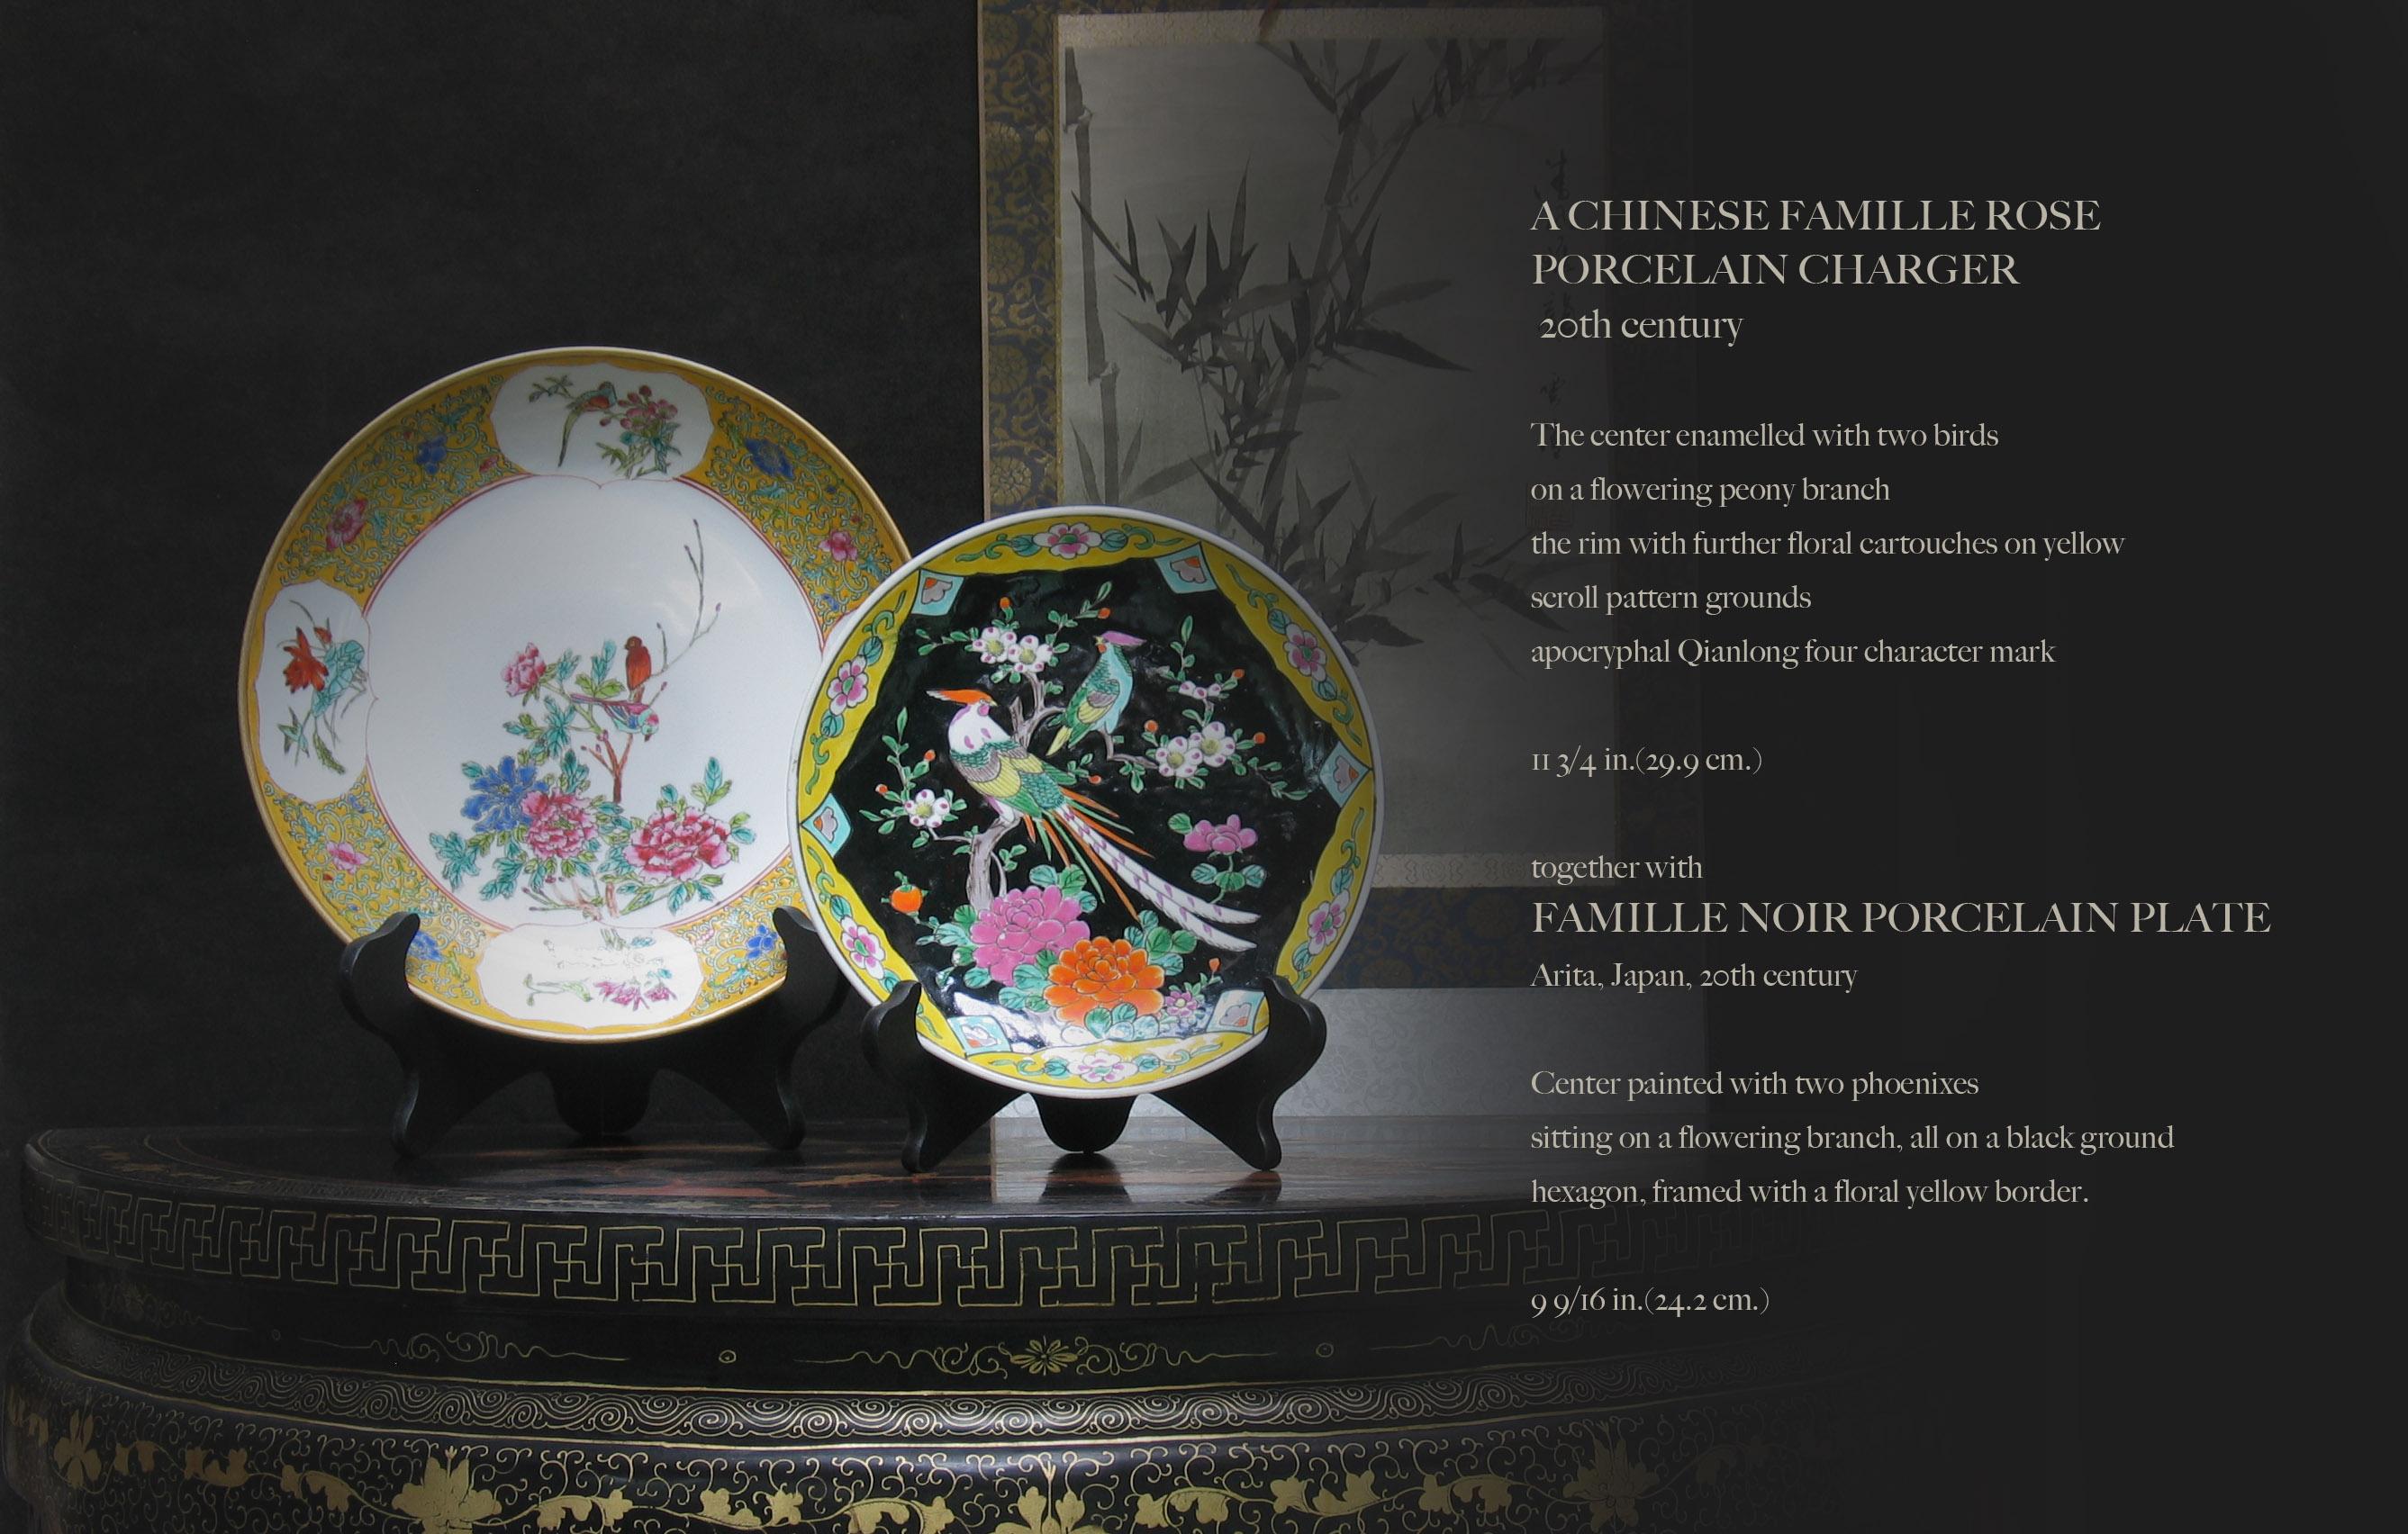 Eine chinesische Famille Rose
Porzellan-Ladegerät
20. Jahrhundert.

Das Zentrum emailliert mit zwei Vögeln 
auf einem blühenden Pfingstrosenzweig
der Rand mit weiteren Blumenkartuschen auf gelbem Grund
Muster der Böden rollen,
apokryphe